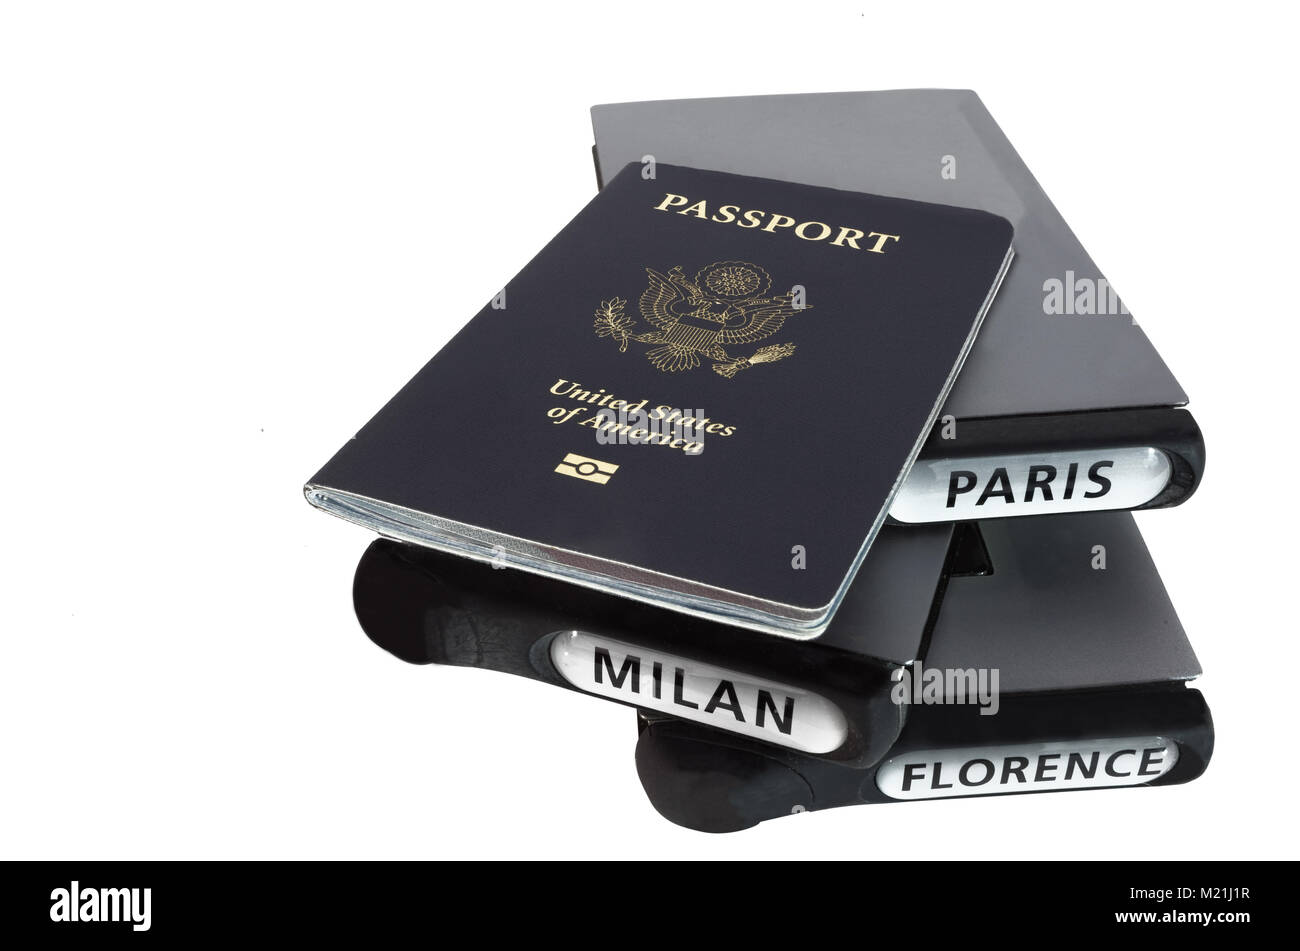 Pasaporte de los Estados Unidos aislado con libros de viajes a París, Milán y Florencia. Foto de stock